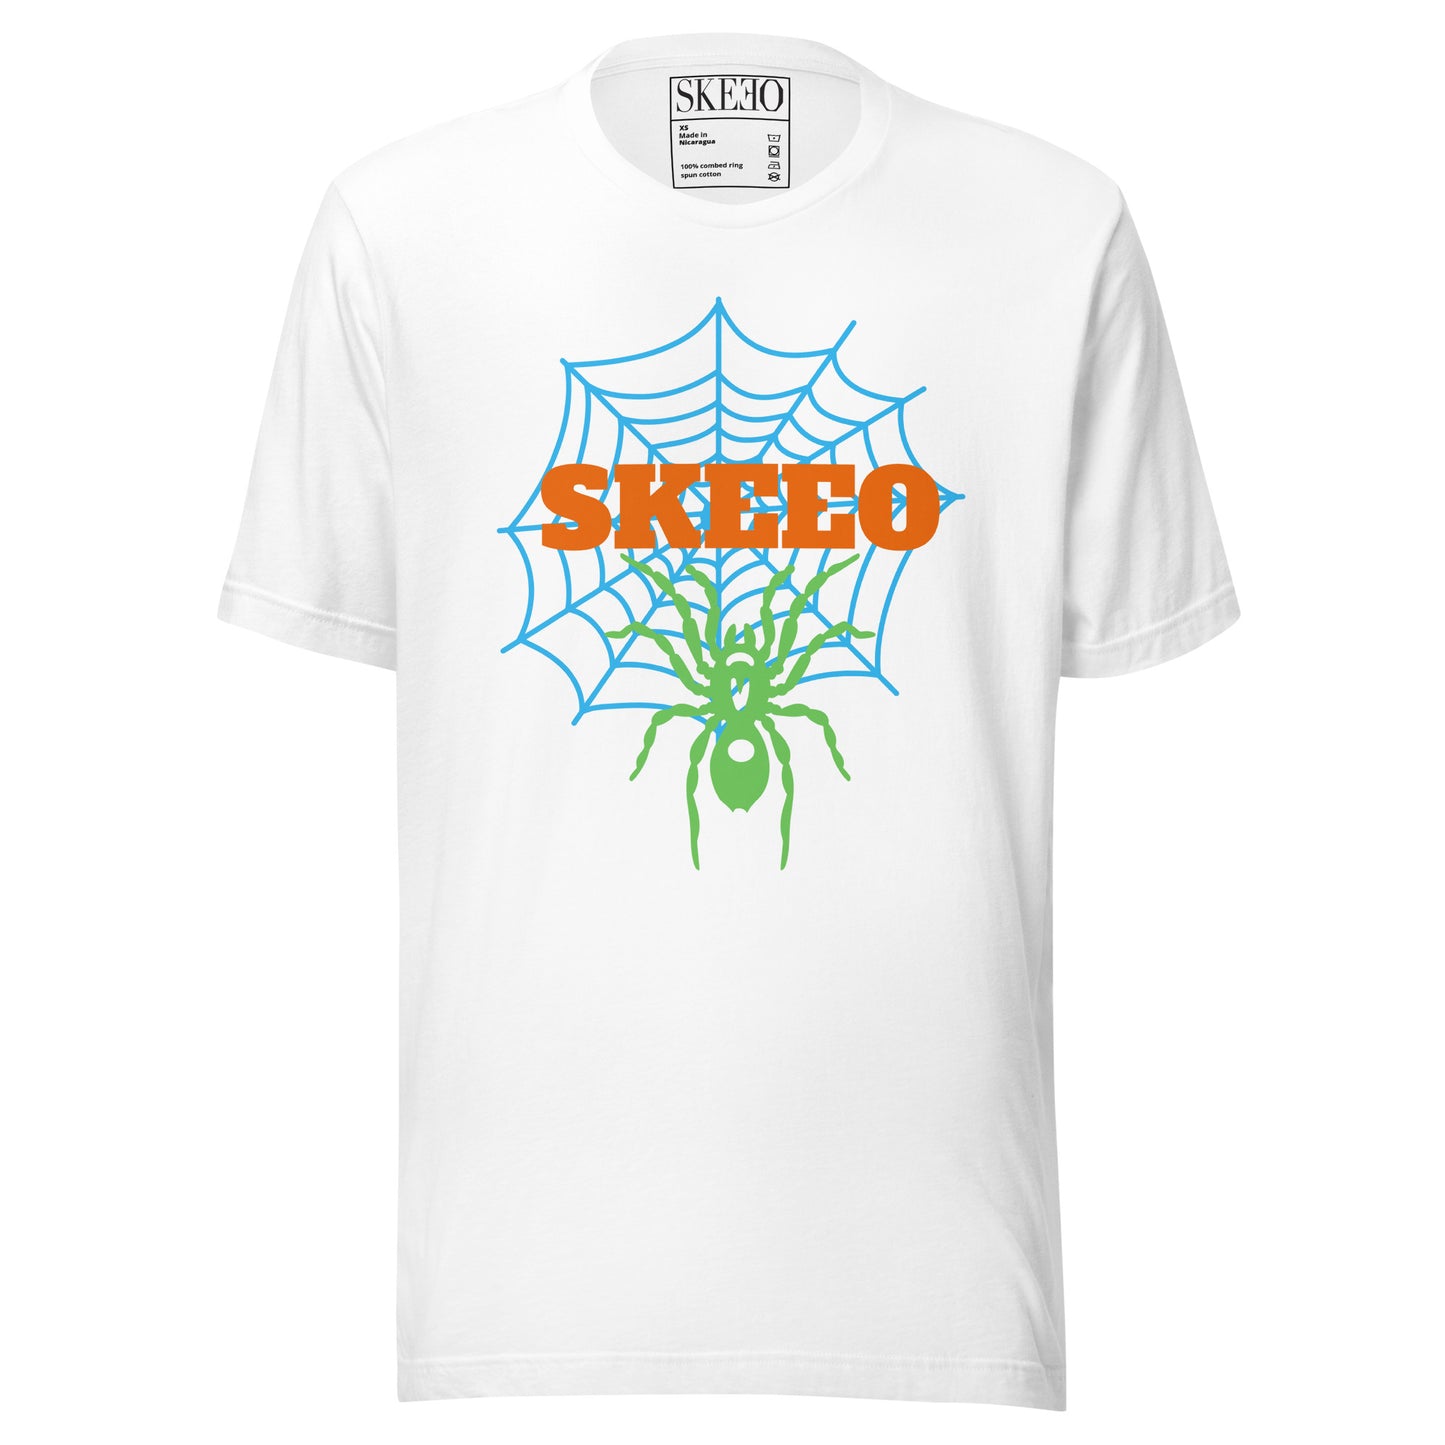 A SK Web t-shirt